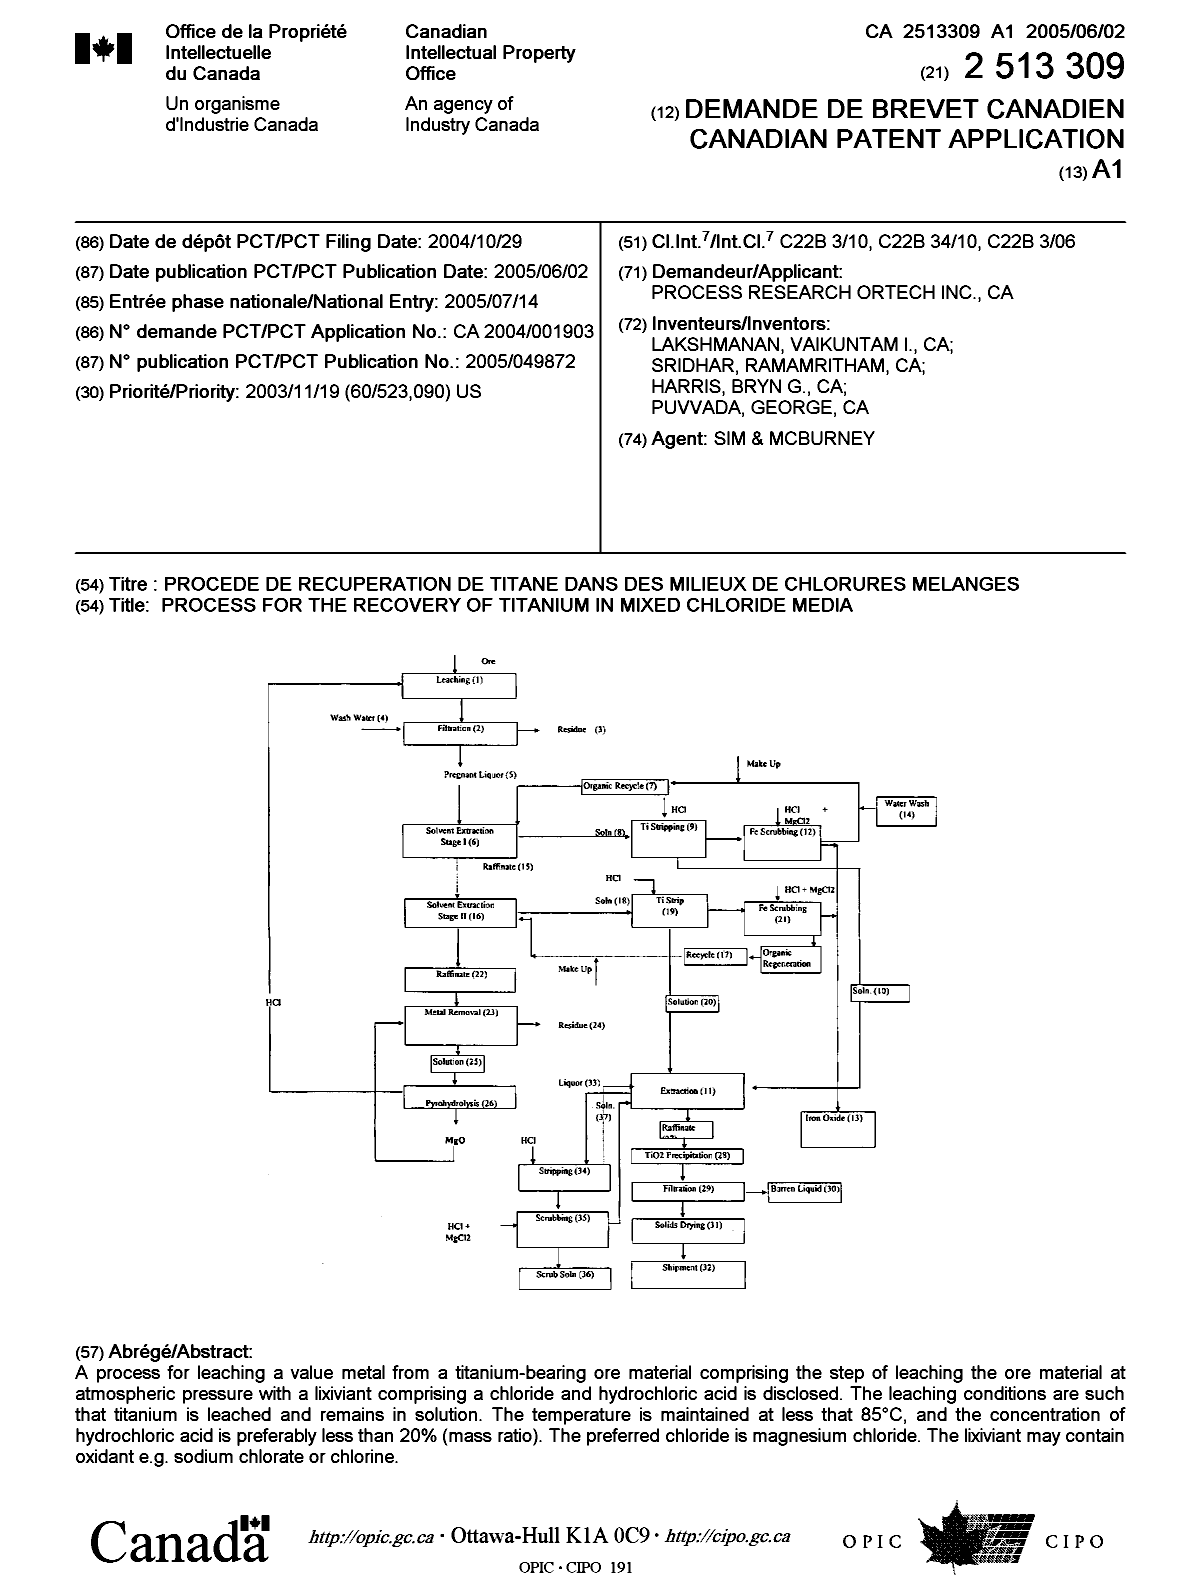 Document de brevet canadien 2513309. Page couverture 20050929. Image 1 de 1